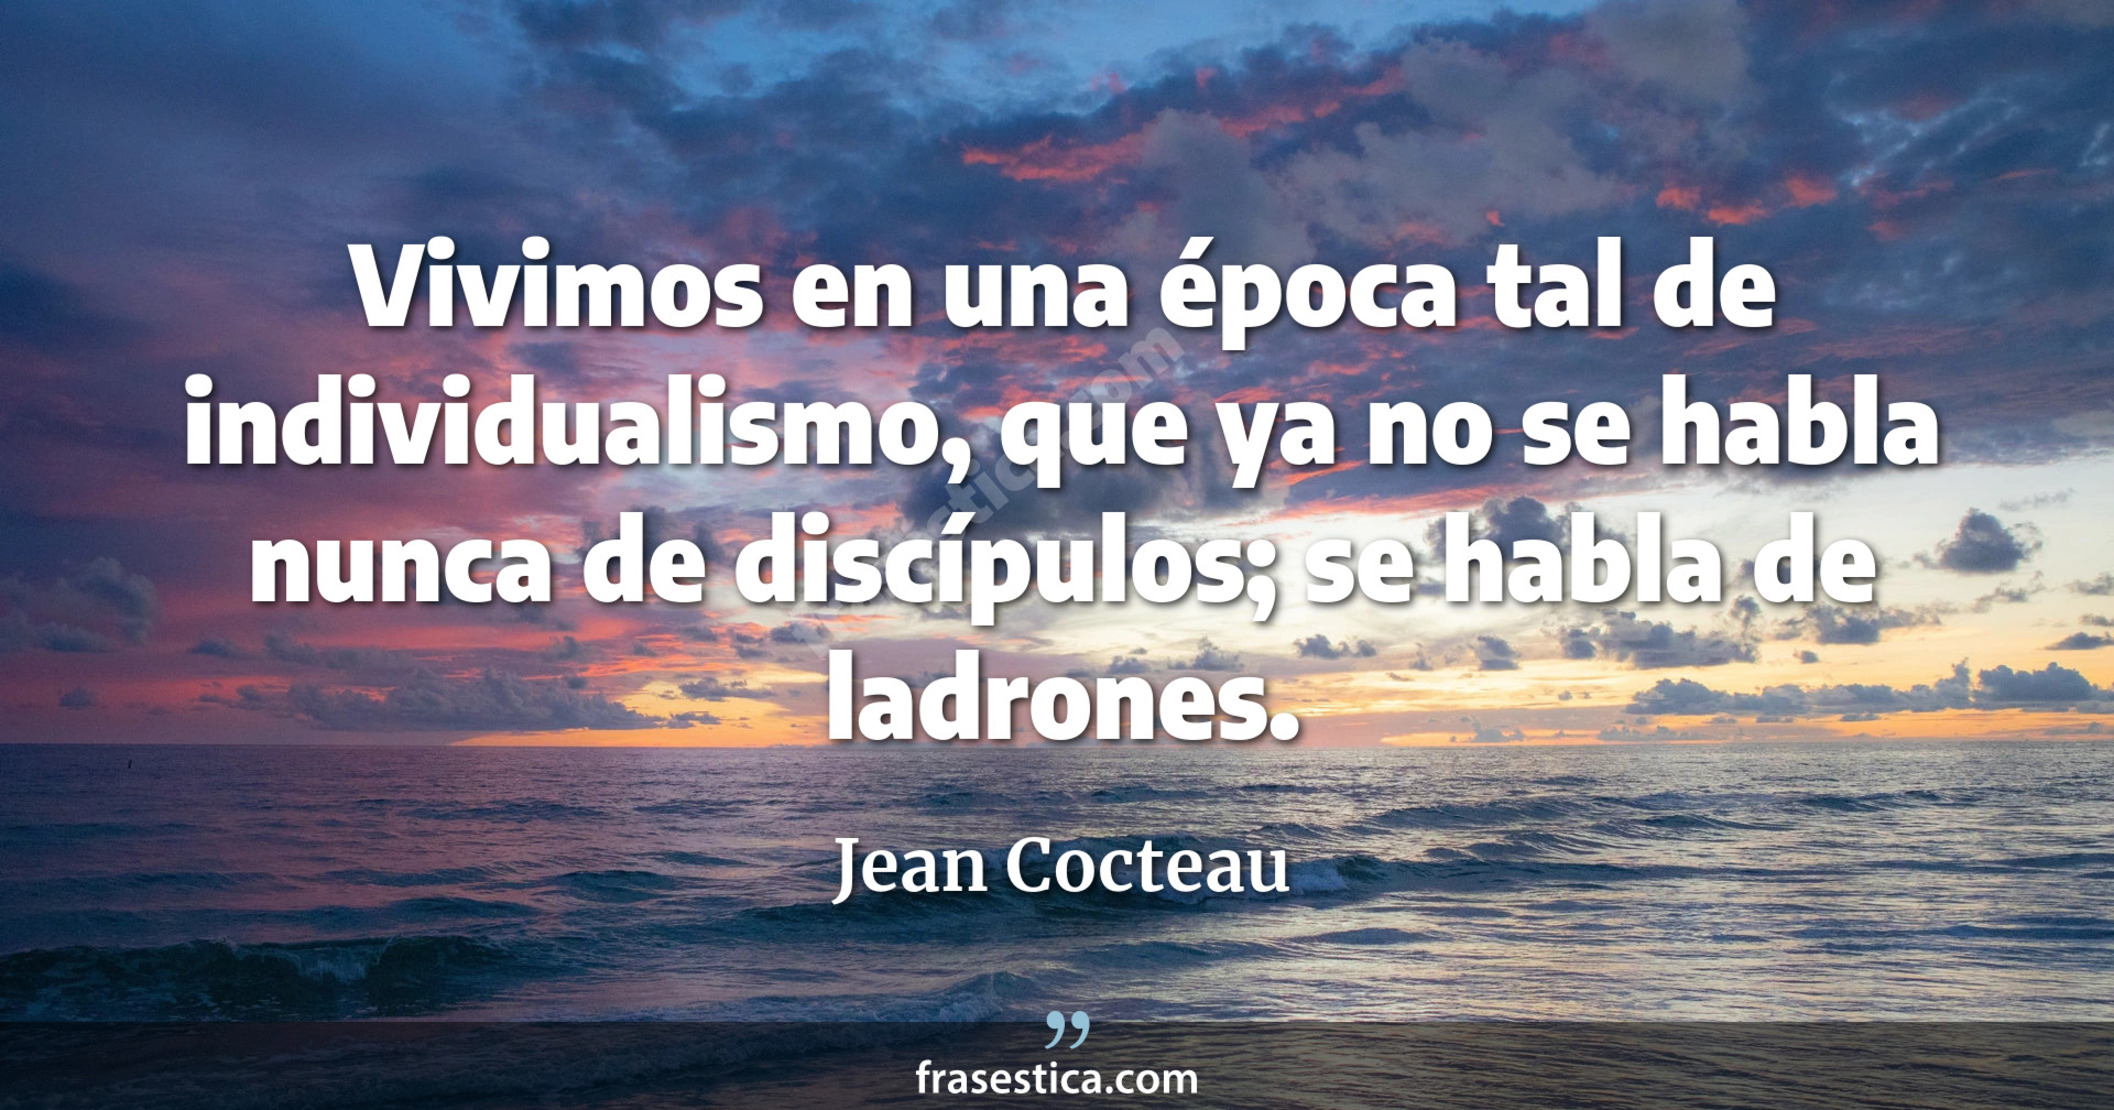 Vivimos en una época tal de individualismo, que ya no se habla nunca de discípulos; se habla de ladrones. - Jean Cocteau